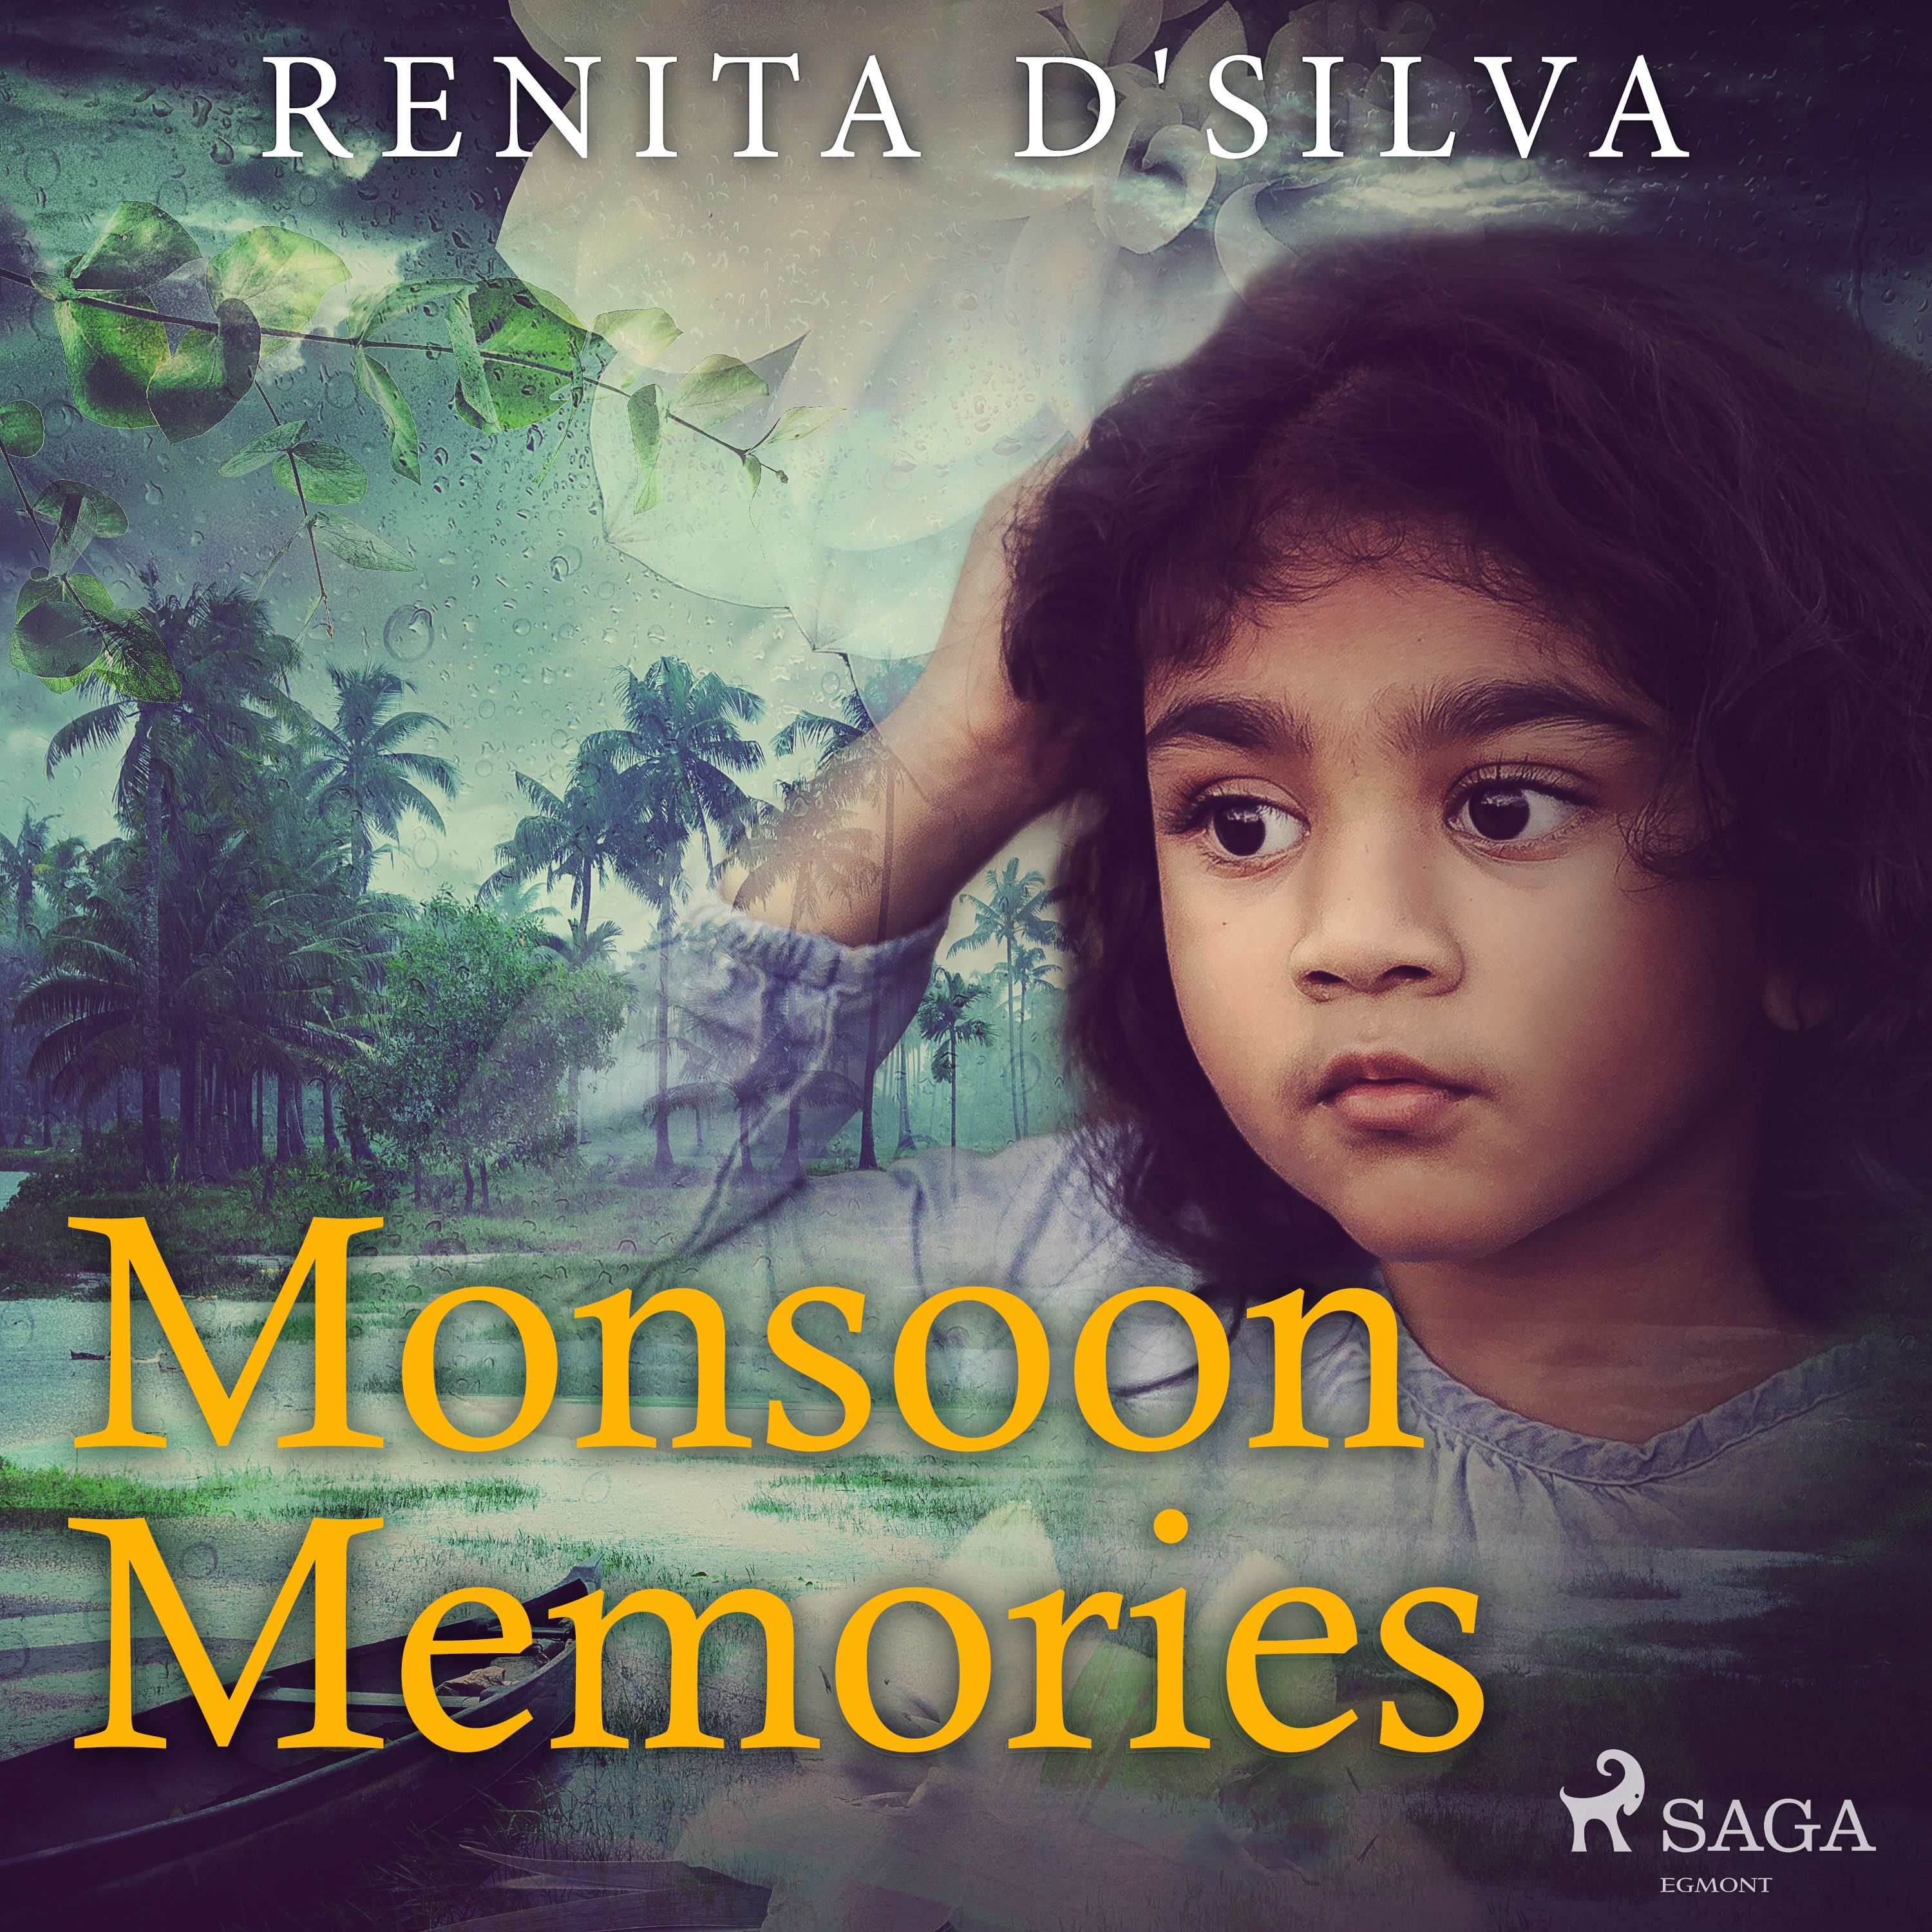 Monsoon Memories, lydbog af Renita D'Silva